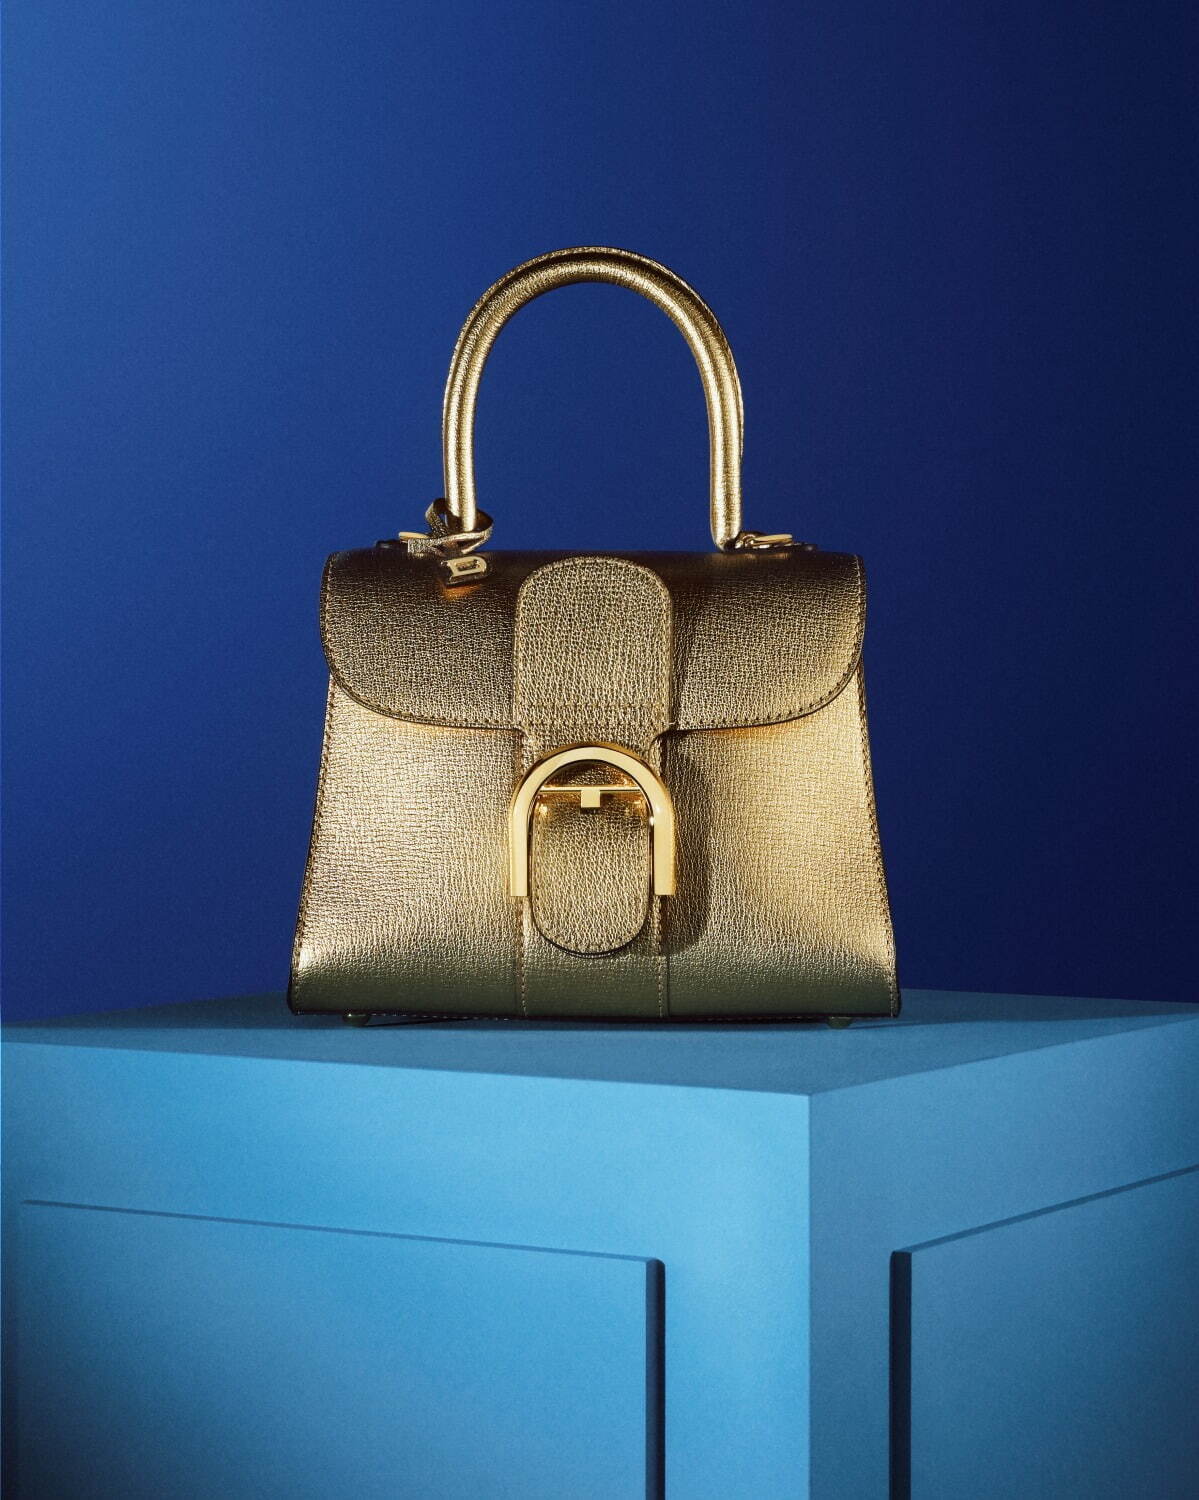 デルヴォー”色鮮やかクリスタル”の新作バッグ「ブリヨン」輝くゴールド 